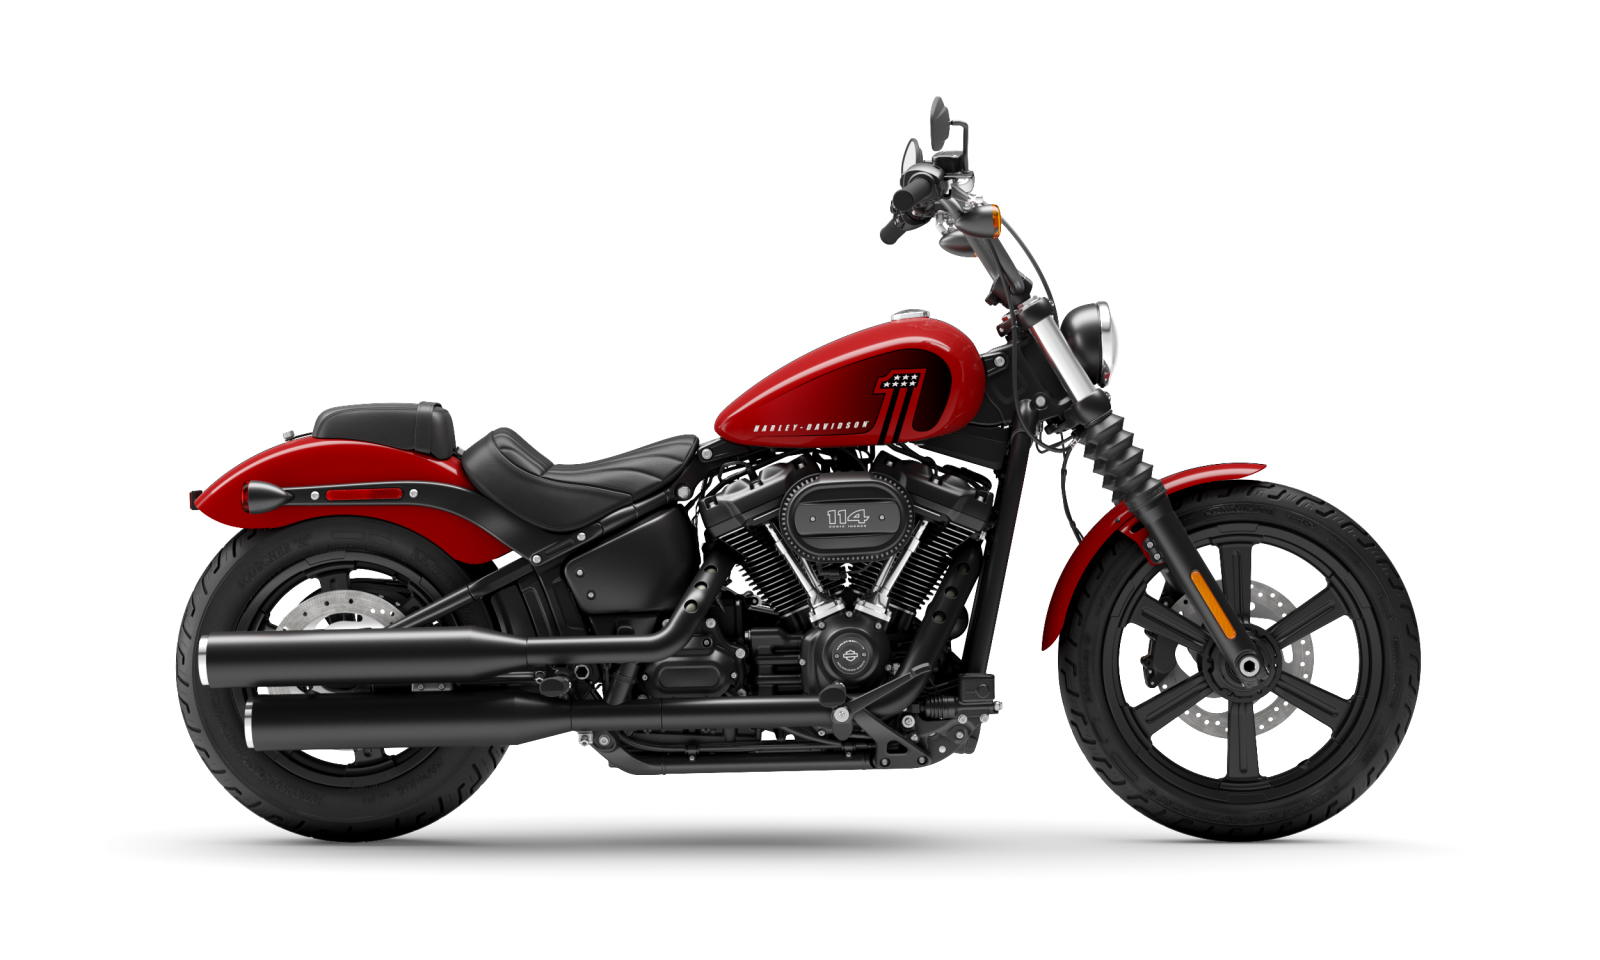 Công bố chính thức Harley Davidson Street Bob 114 Vivid Black 2021 nhiều  nâng cấp đáng giá tại Việt Nam  Xefun